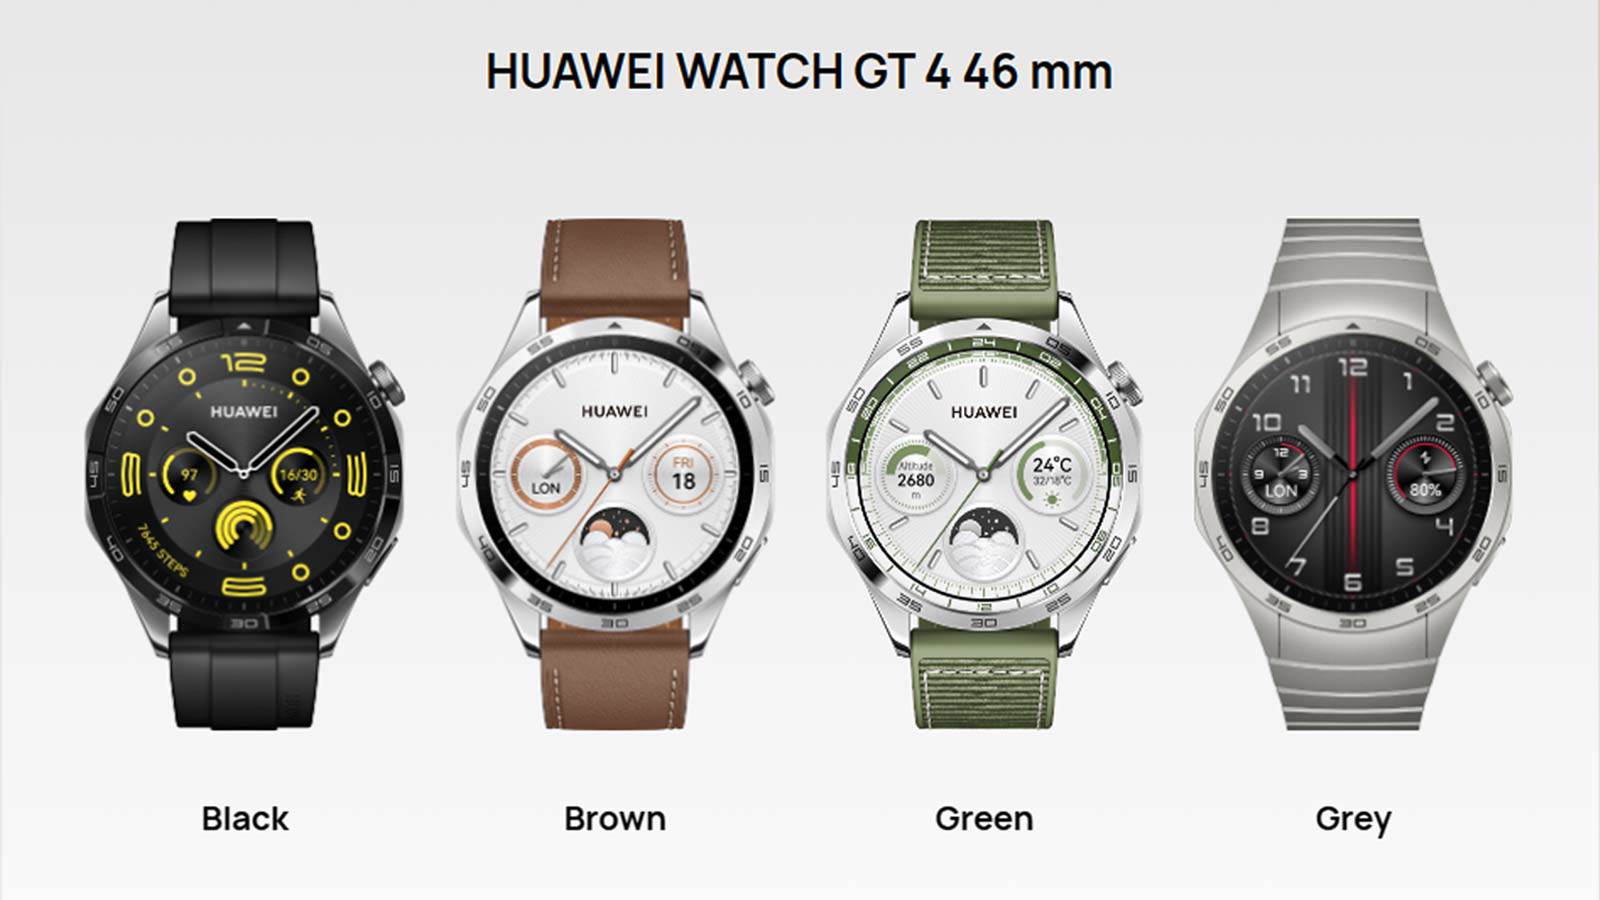 Watch GT 4 mới ra mắt sở hữu pin lên đến 2 tuần, giá tầm trung - 4